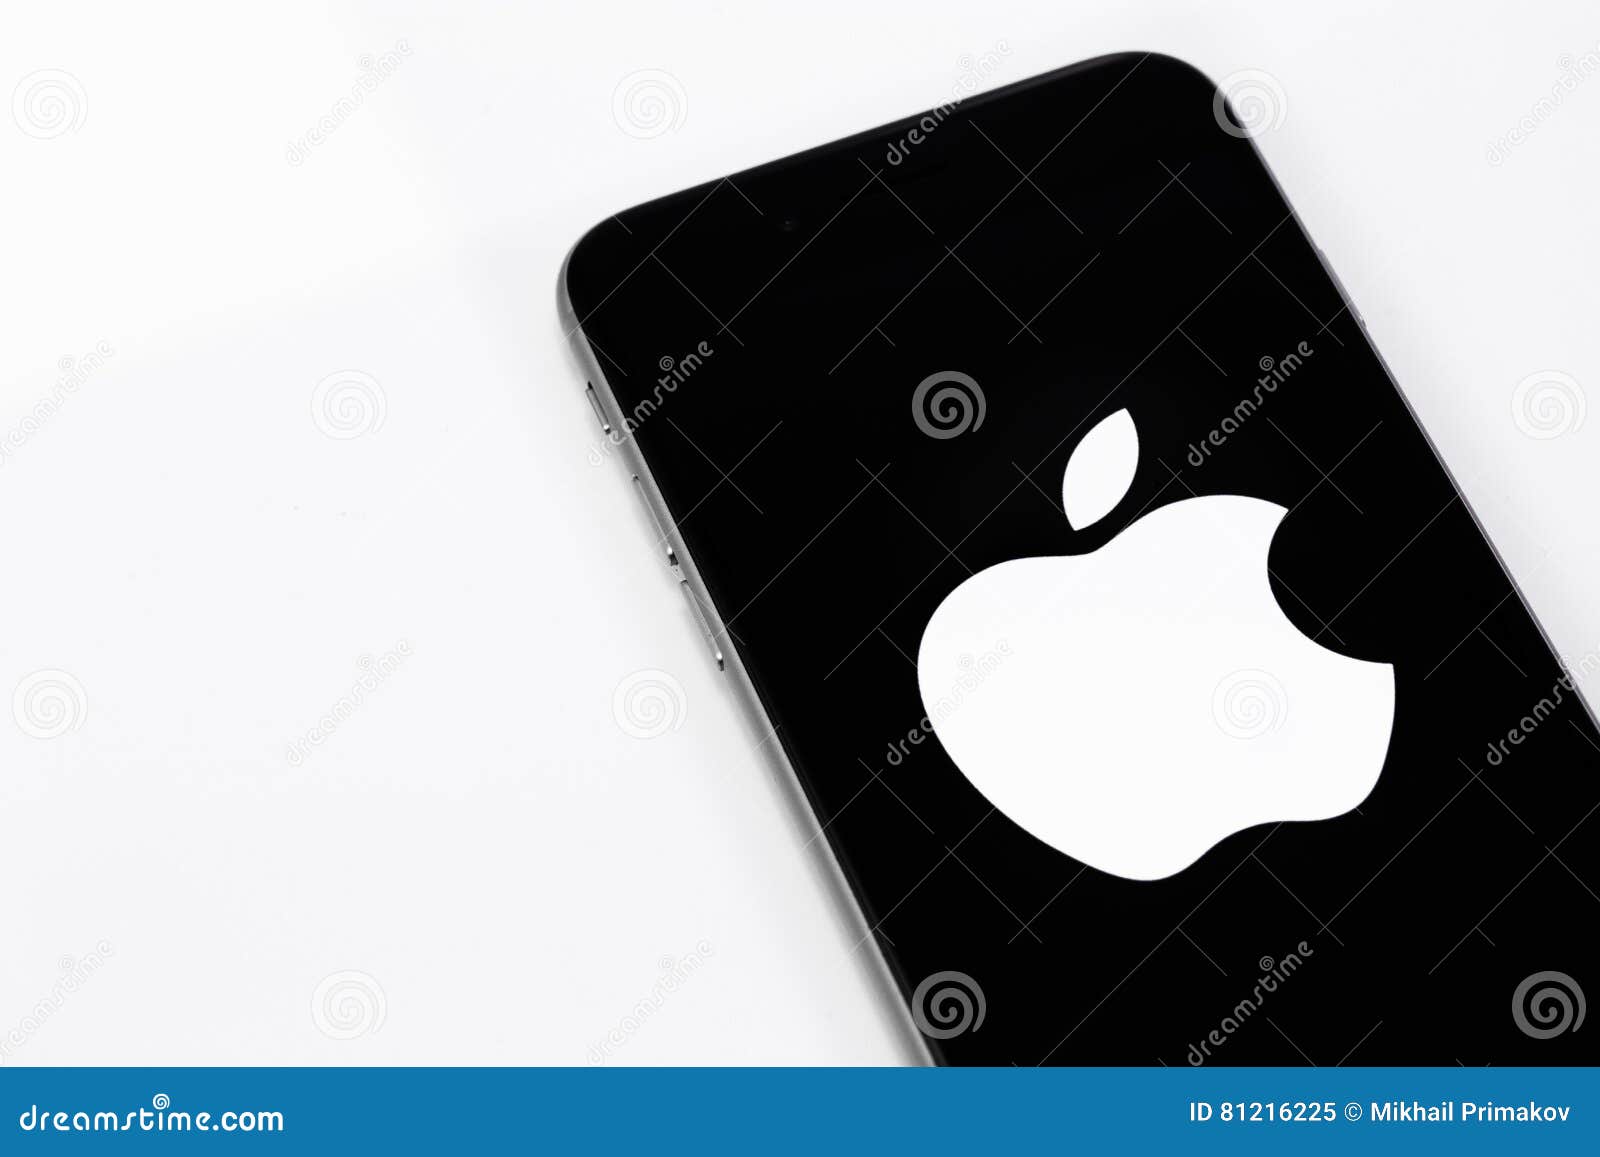 IPhone 6s De Apple Con El Logotipo De La Marca Apple En La Pantalla Ekat  Imagen editorial - Imagen de elegante, departamento: 81216225